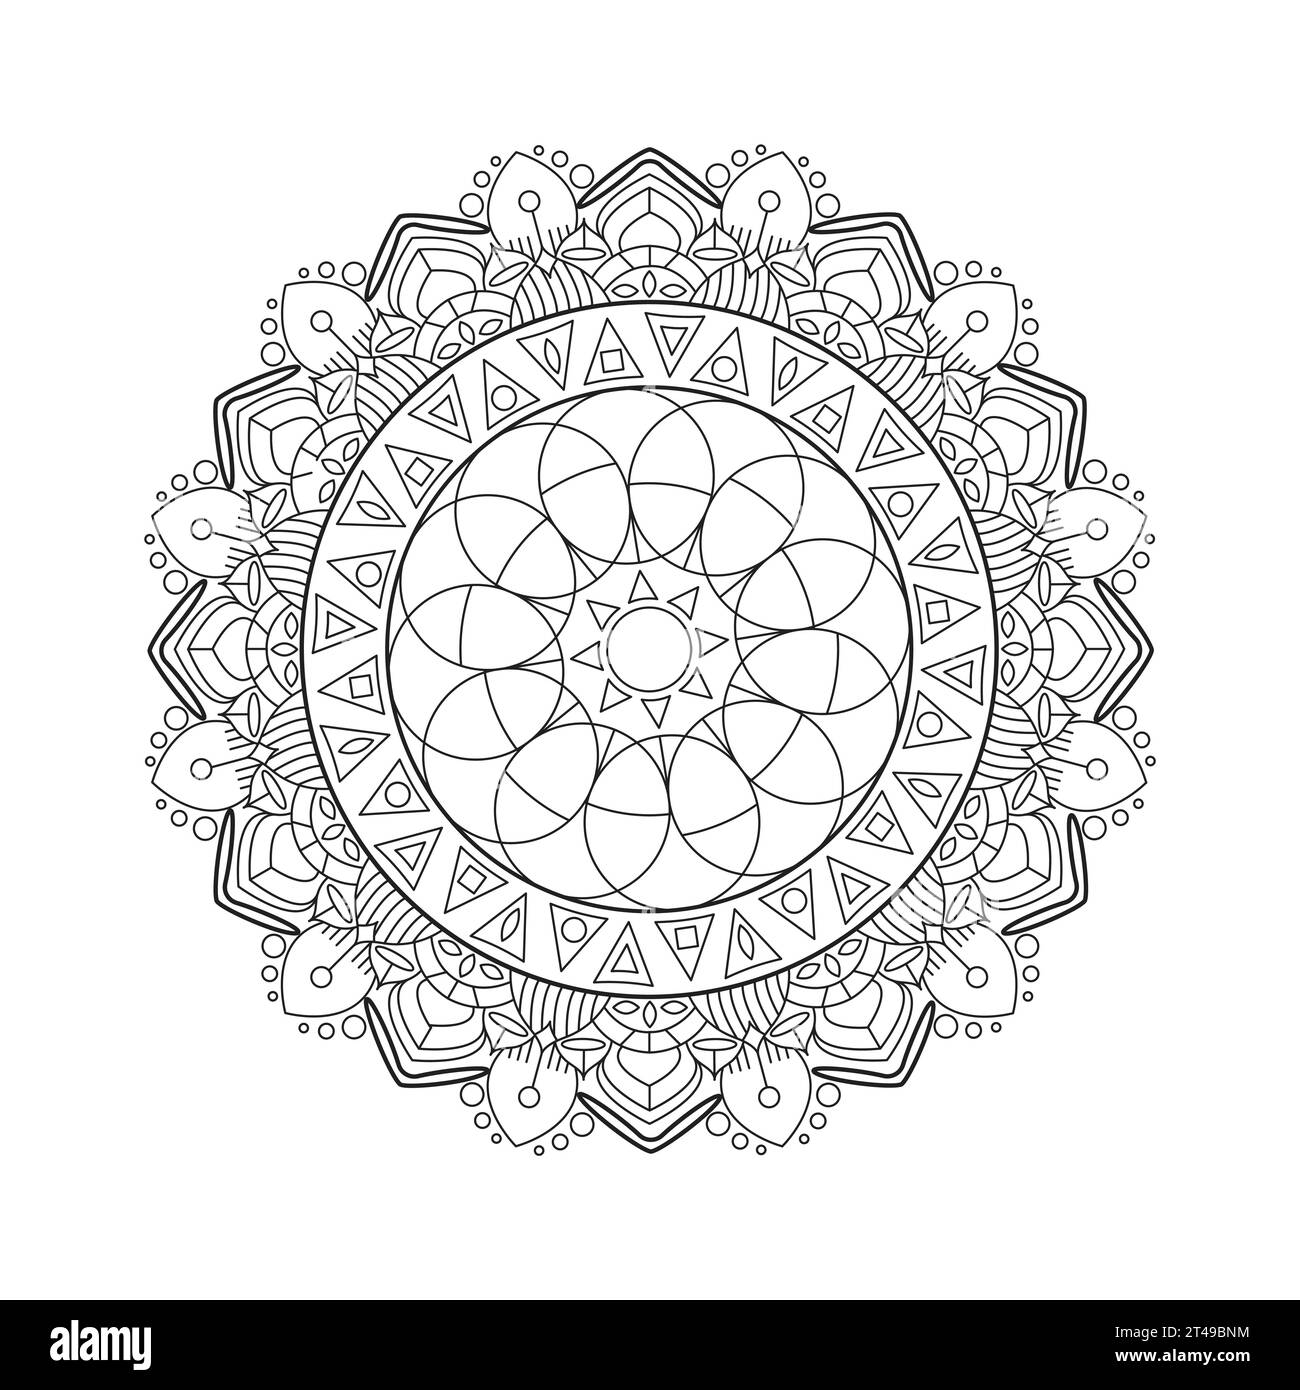 Motivo Mandala circolare per una pagina da colorare o un libro da colorare. Profilo decorativo rotondo pagina del libro in stile etnico Illustrazione Vettoriale